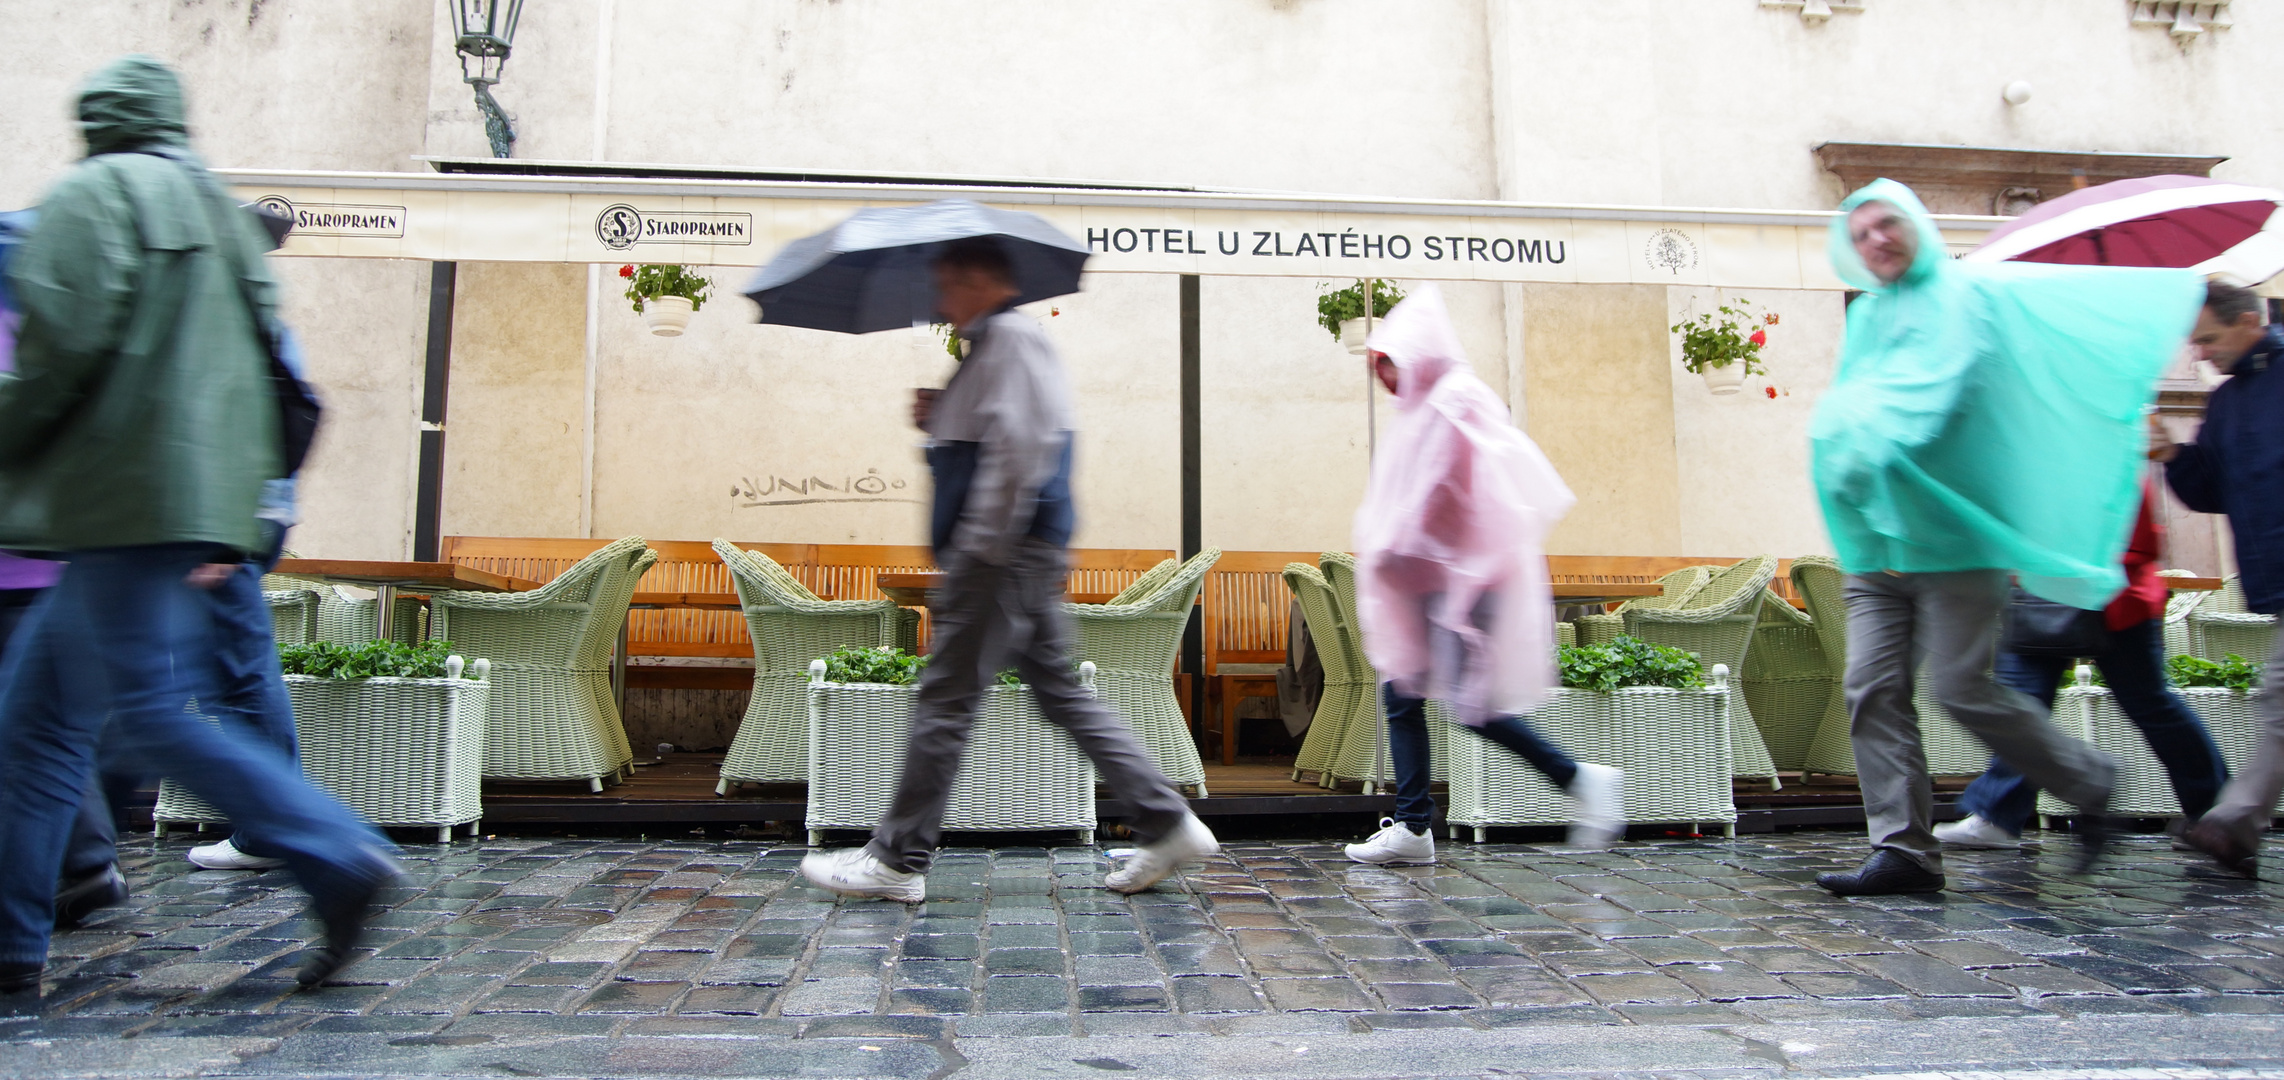 Da will keiner bleiben - Regen in Prag